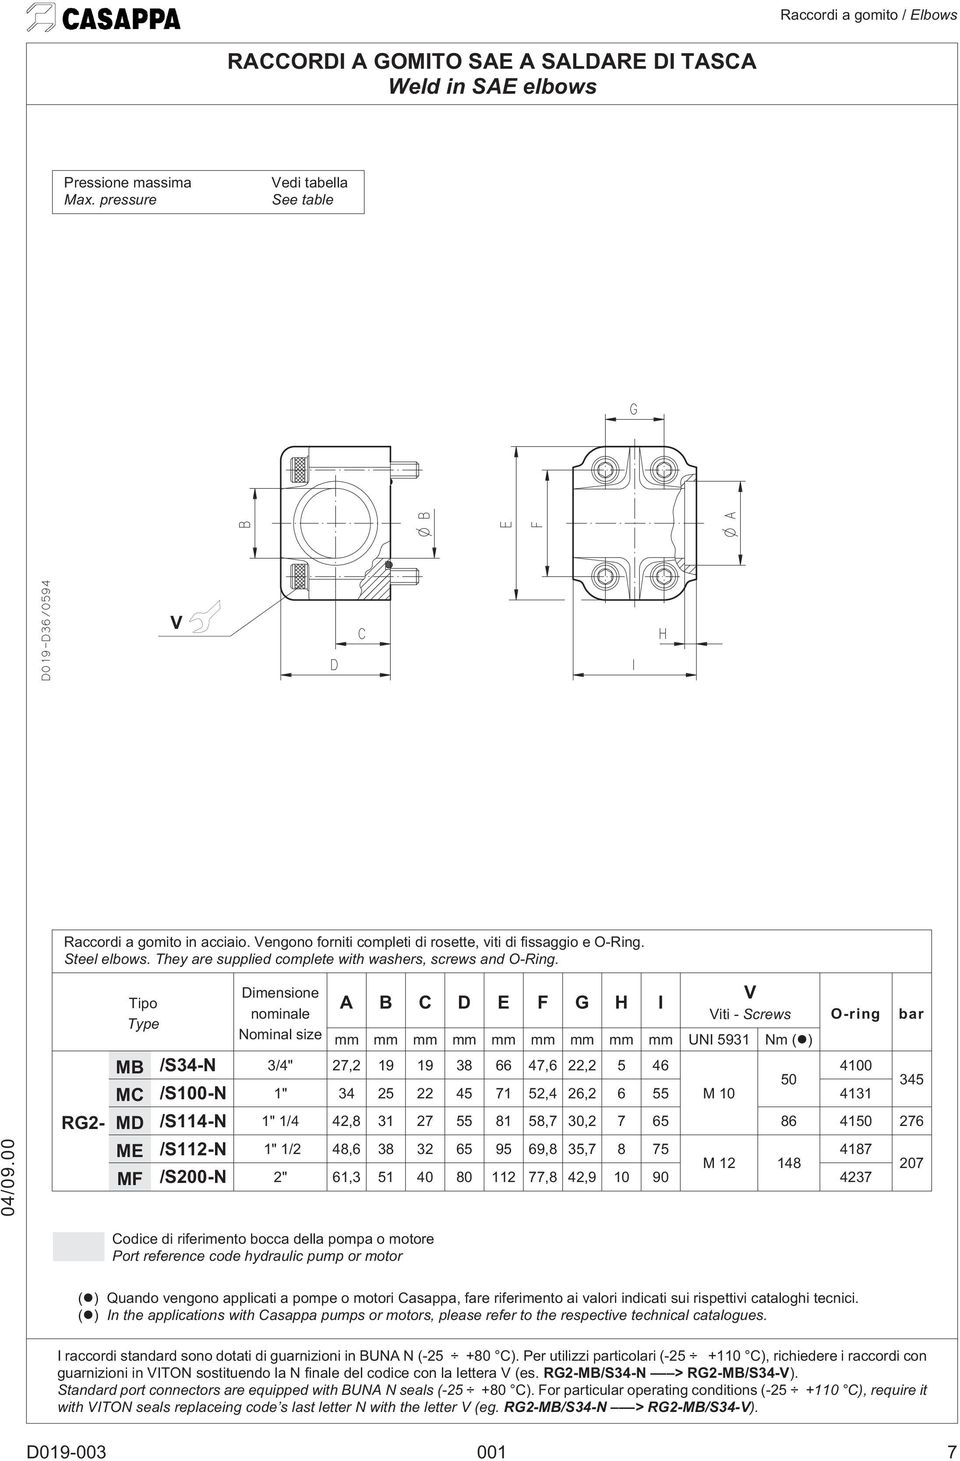 RG2- Dimensione nominale Nominal size Codice di riferimento bocca della pompa o motore Port reference code hydraulic pump or motor A B C D E F G H I iti - Screws O-ring bar mm mm mm mm mm mm mm mm mm